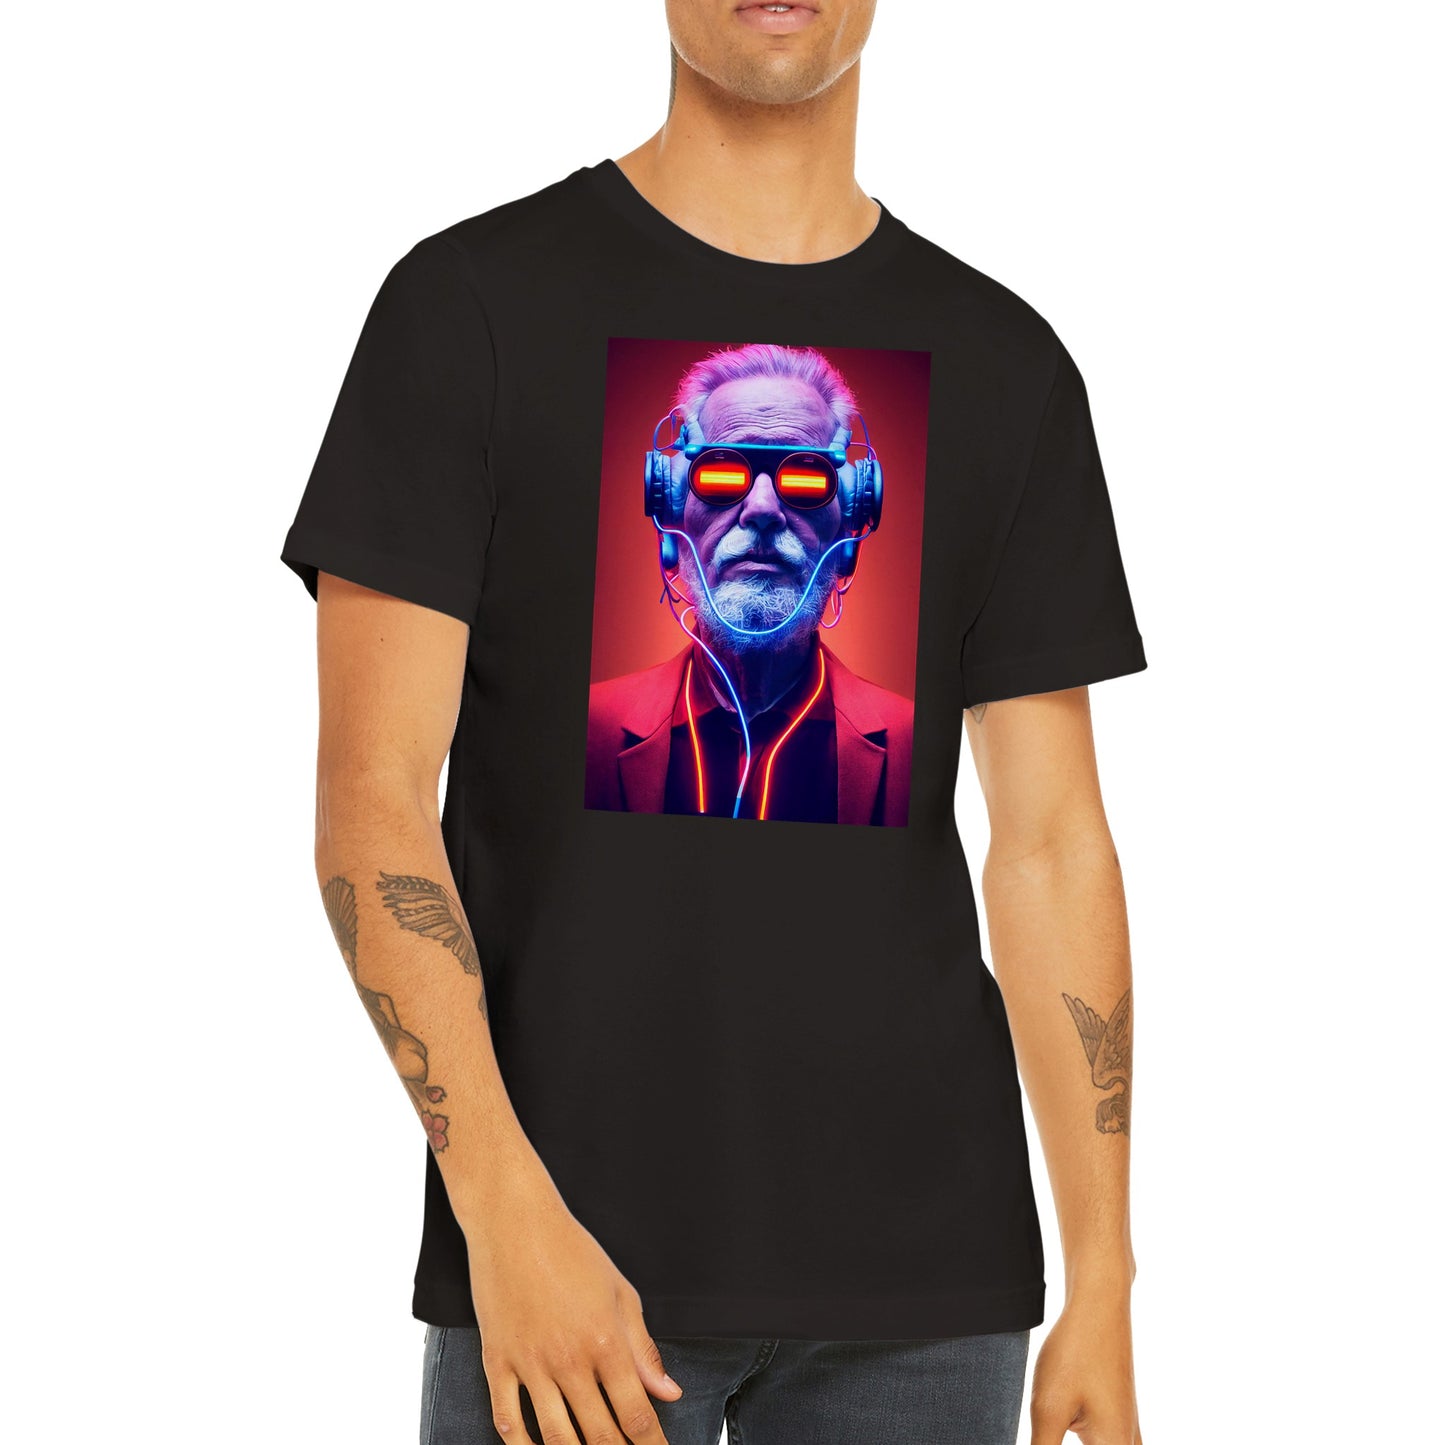 Cyberpunk man T-shirt